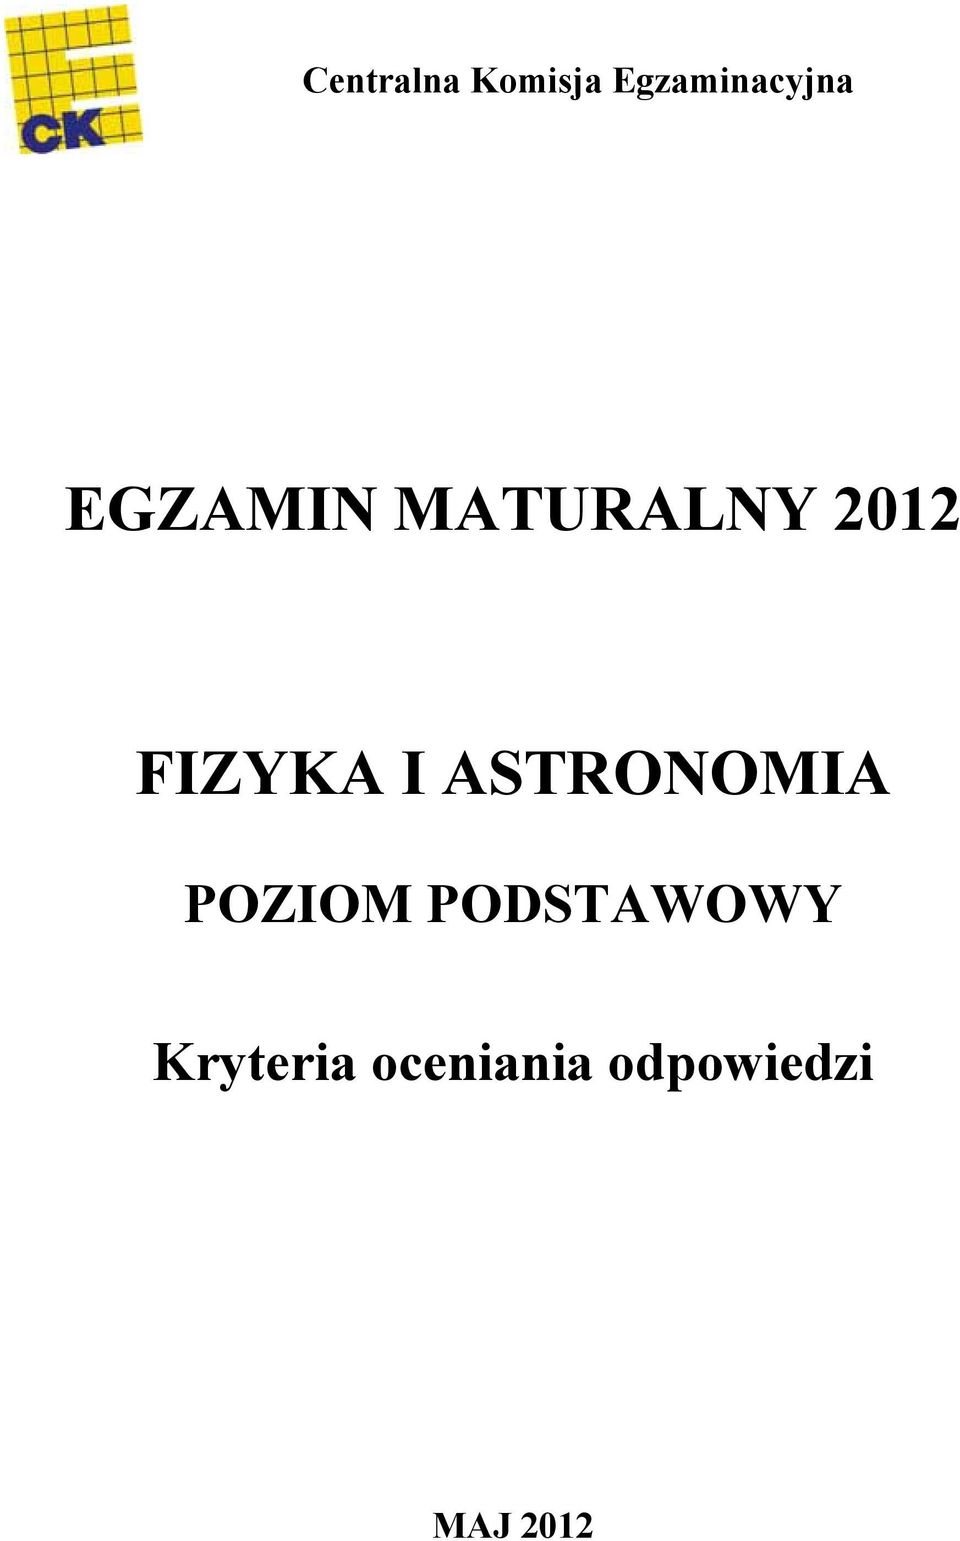 ASTRONOMIA POZIOM PODSTAWOWY